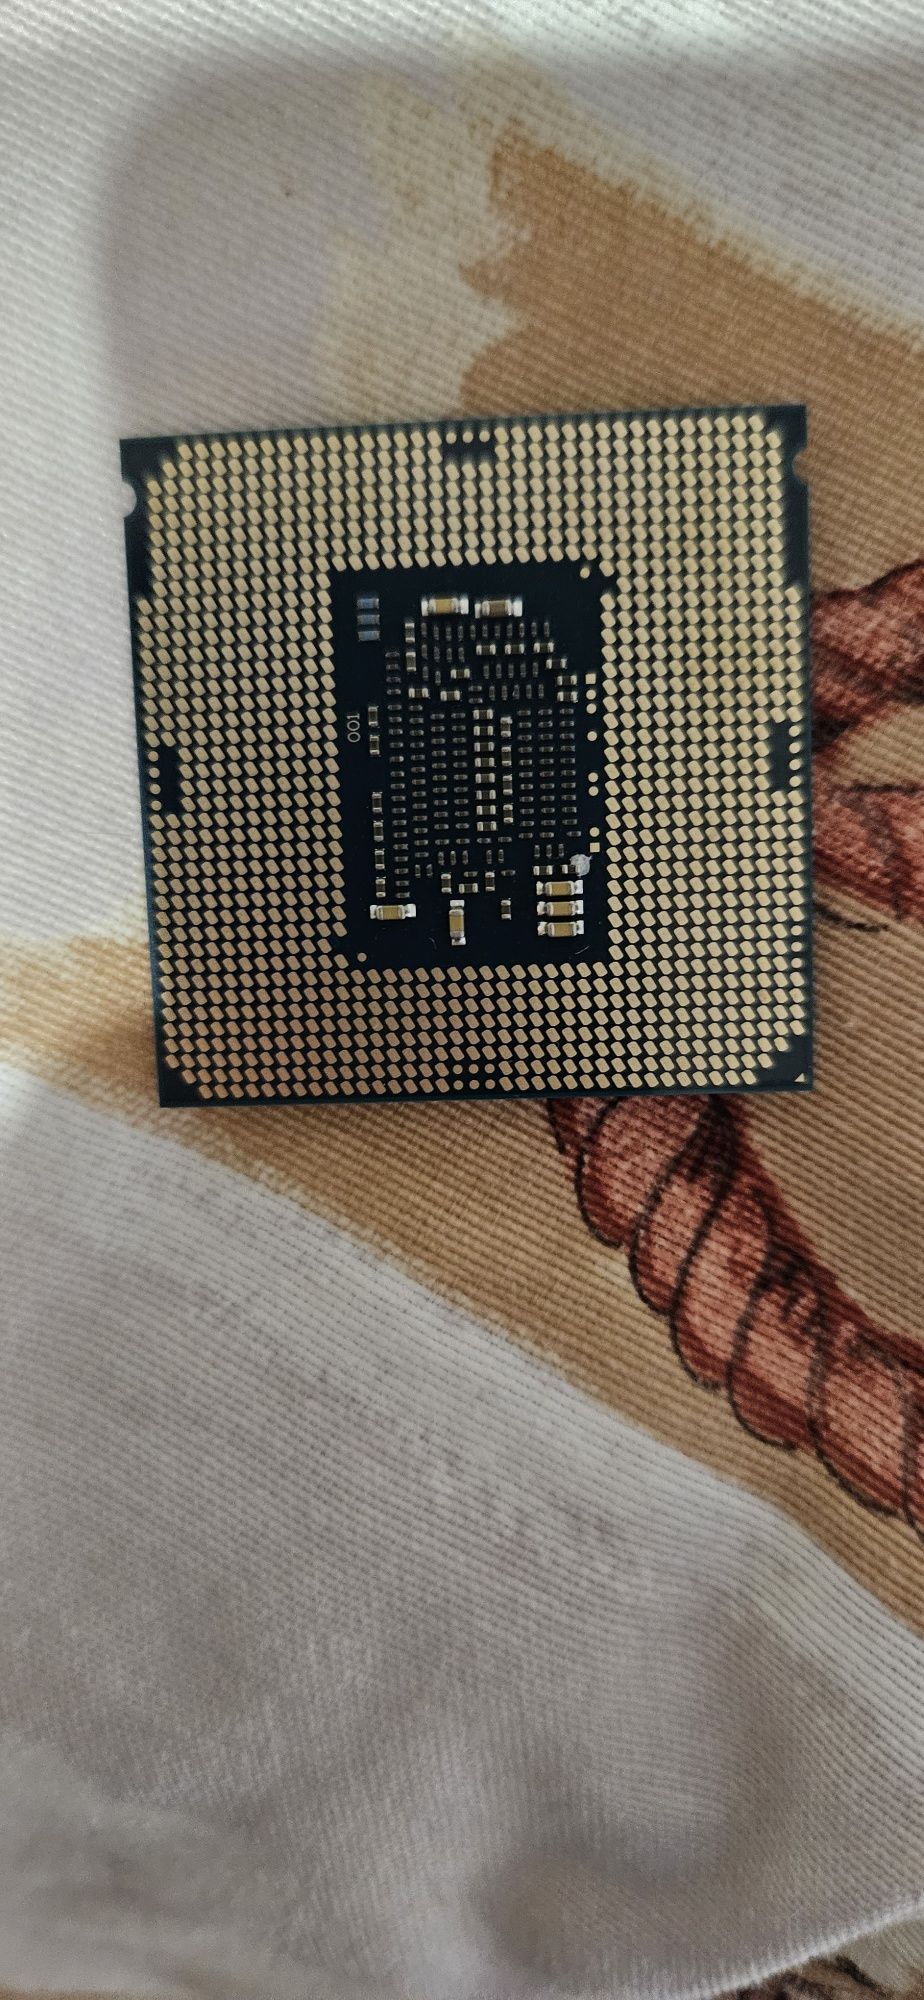 Processador Intel i5 6600